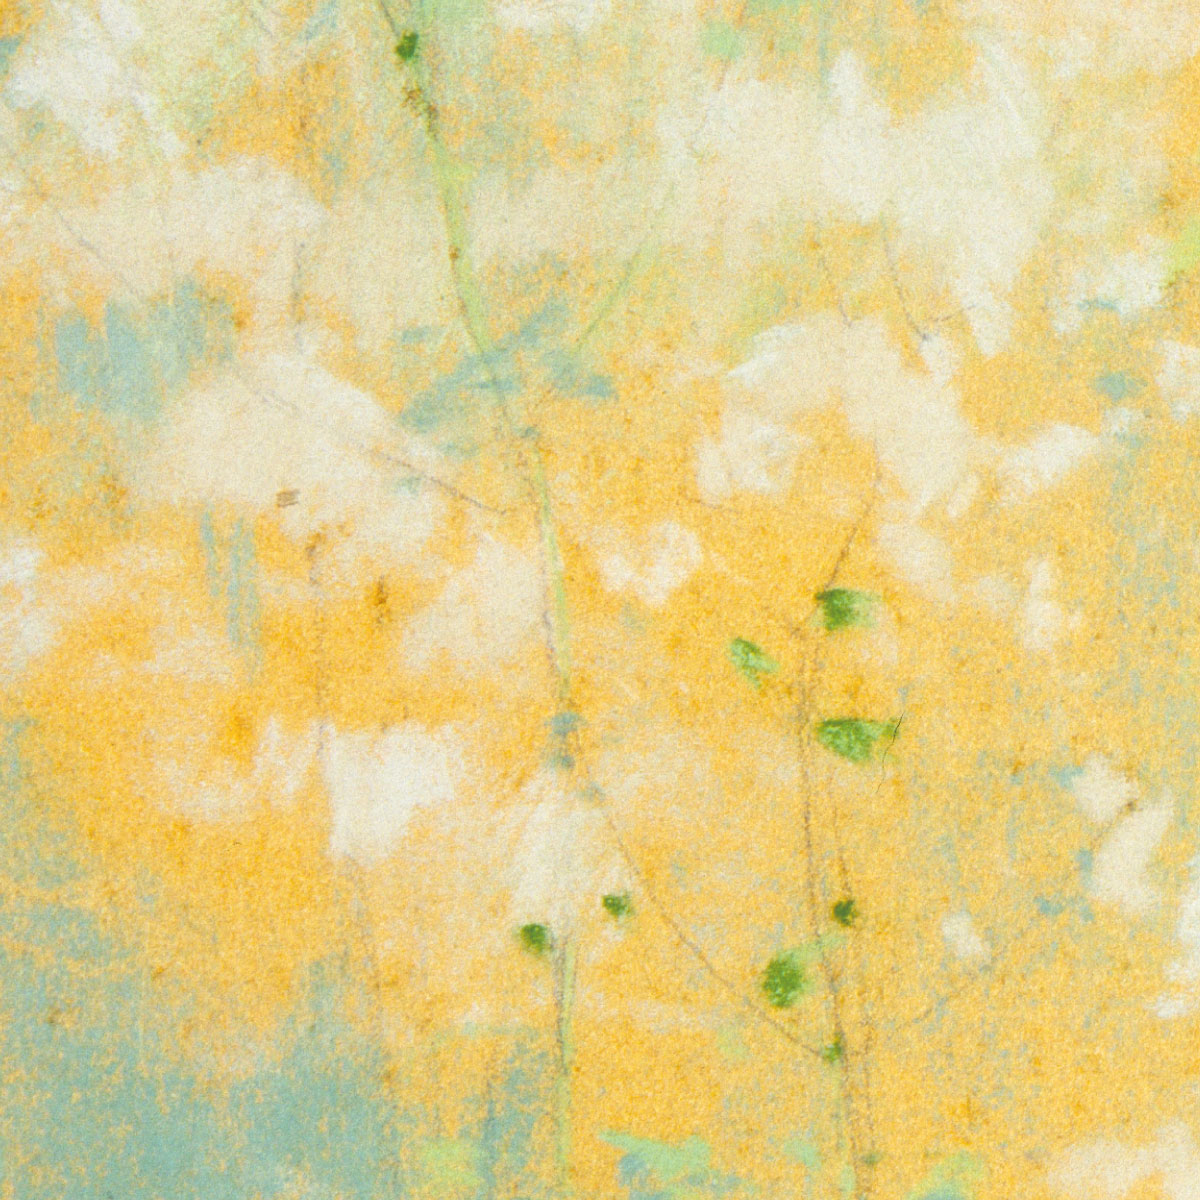 額縁付き アートポスター Wild Flowers 花 イエロー 黄色 天然木フレーム付き 額装 植物 おしゃれ 絵画 北欧 名画 インテリア 正方形  アートパネル APFS010